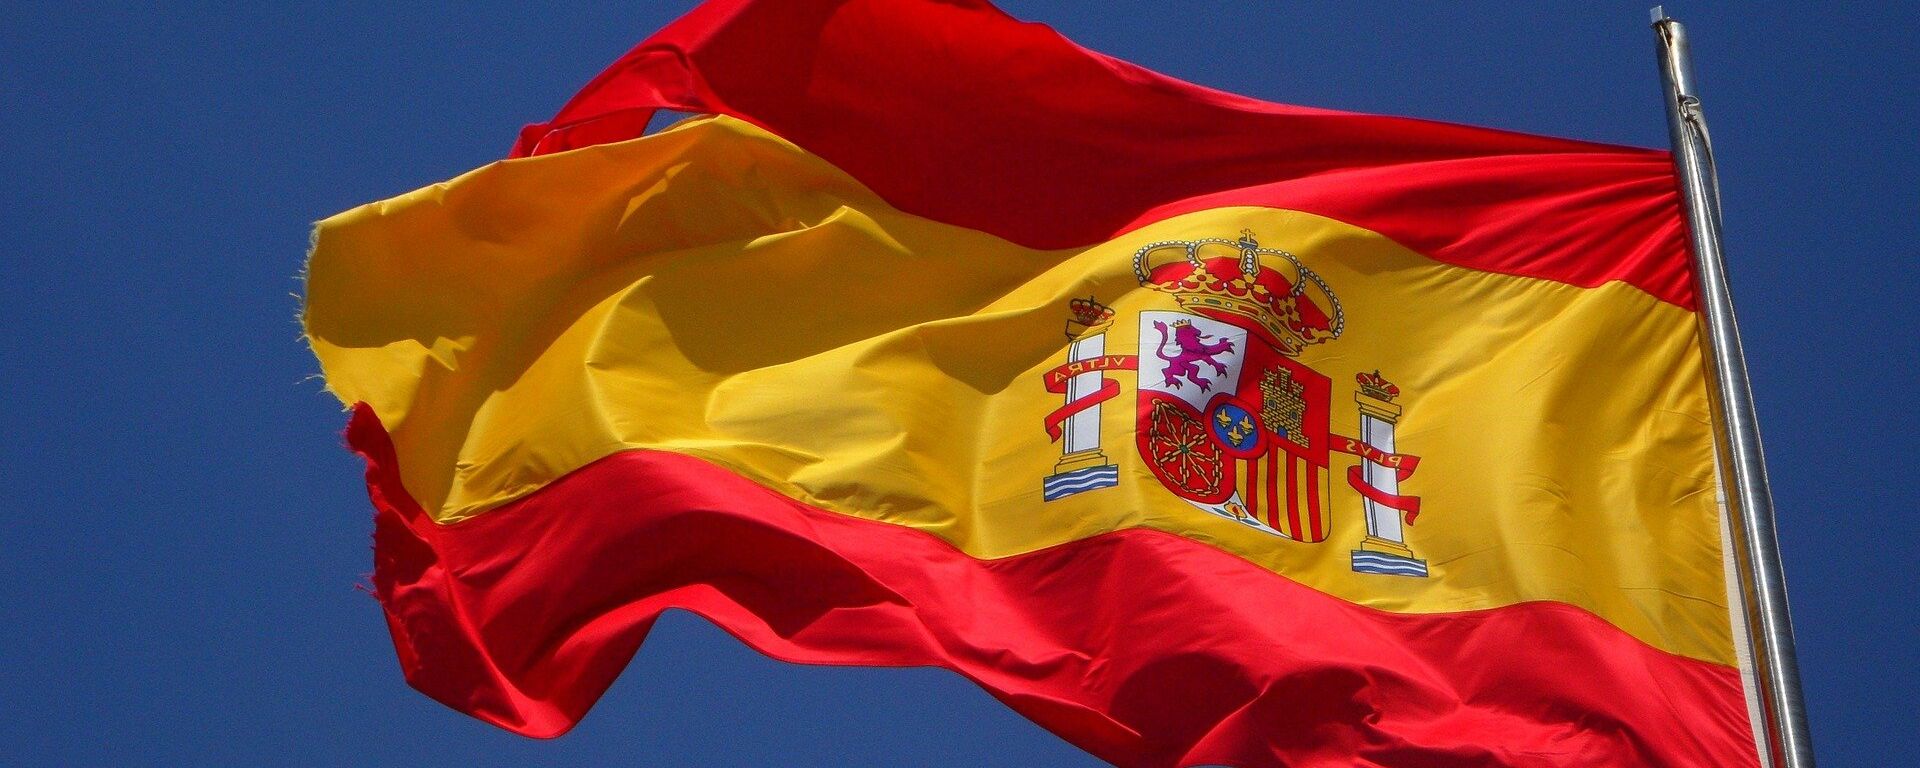 La bandera de España - Sputnik Mundo, 1920, 29.04.2021